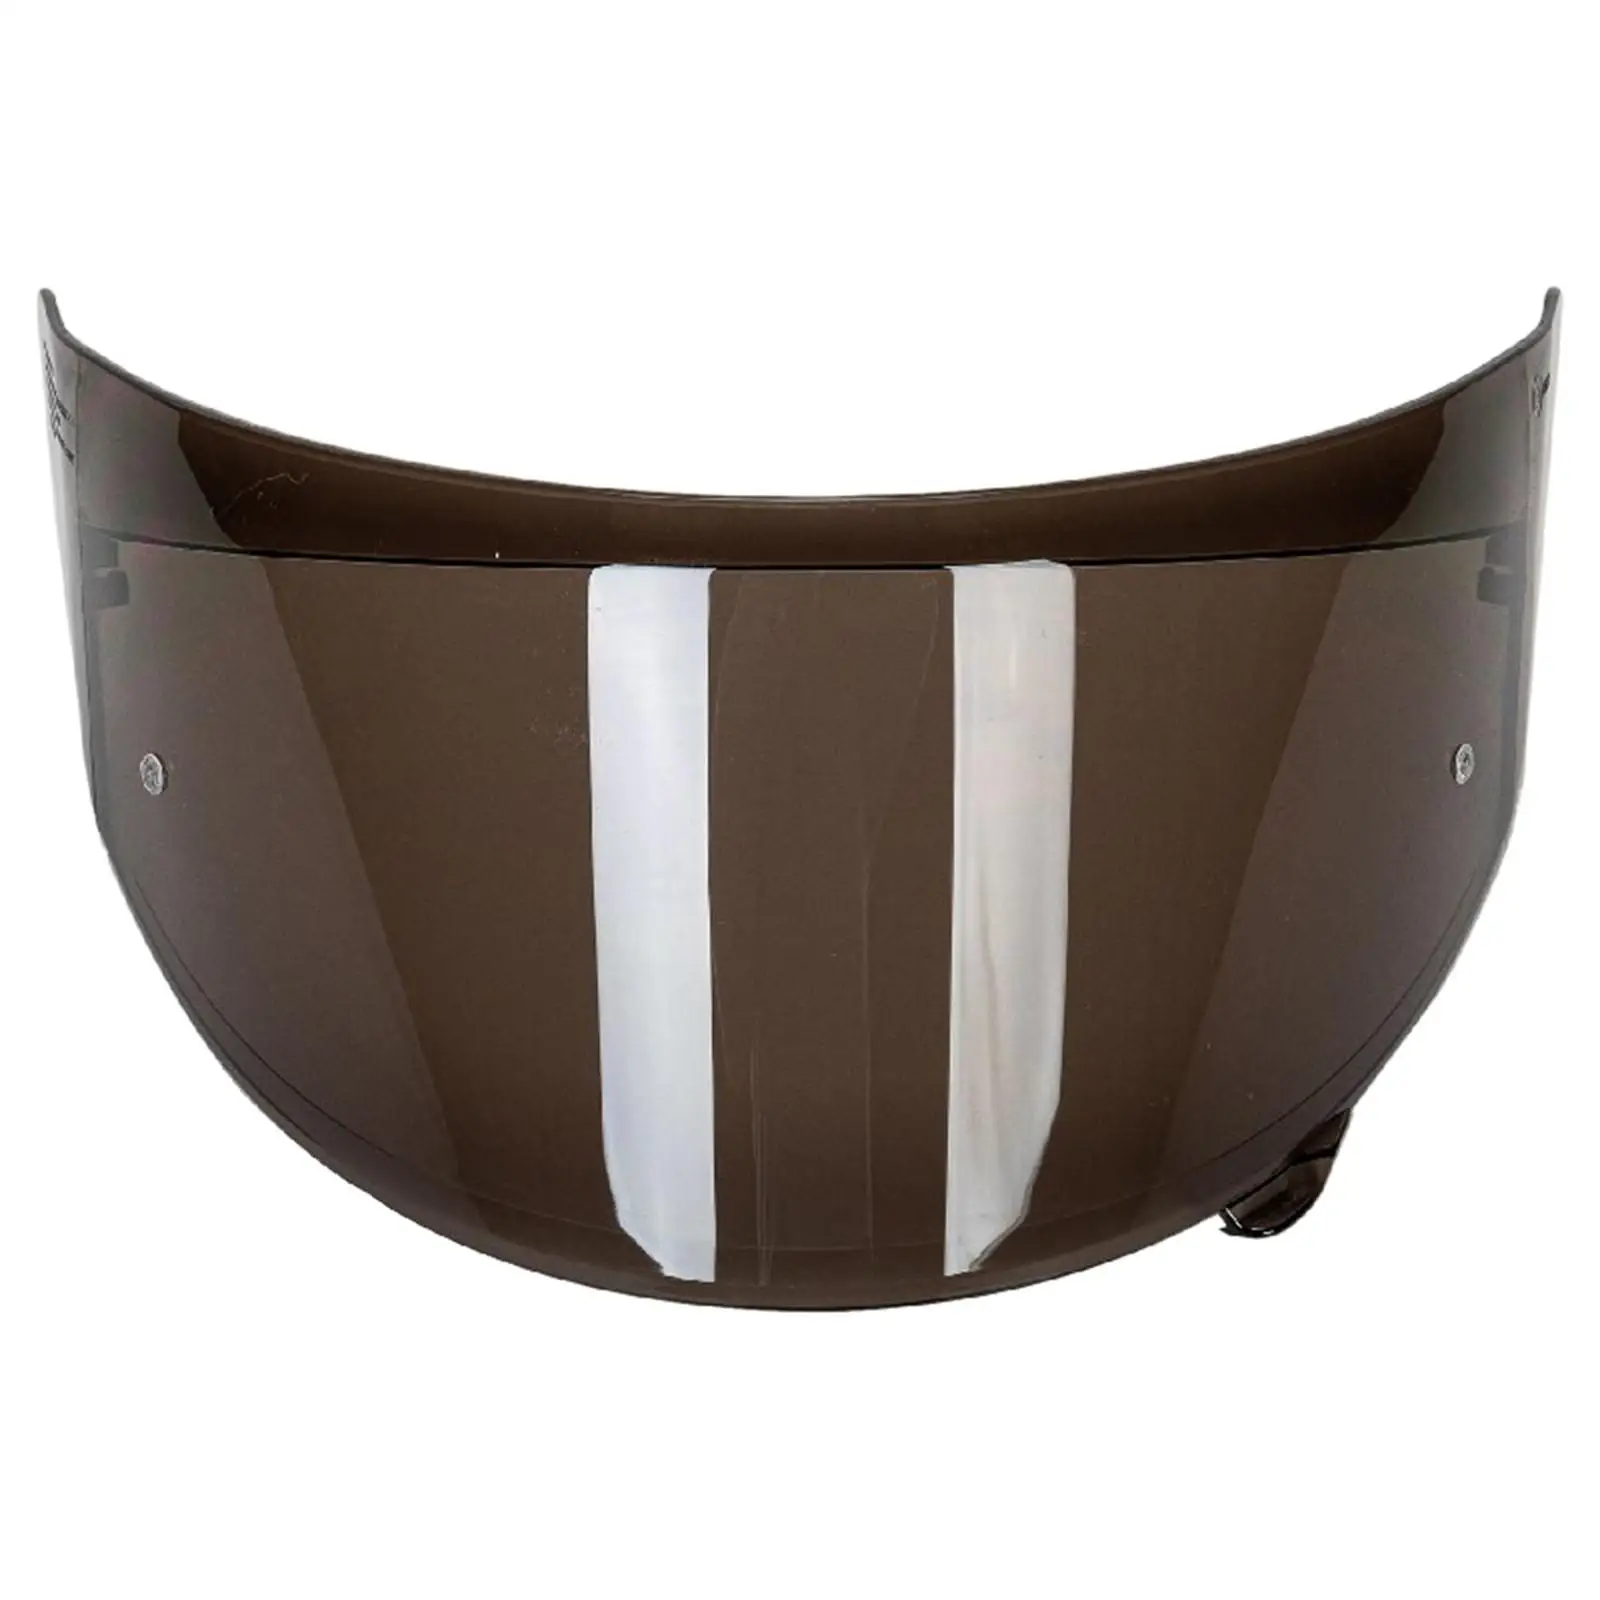  Helmets Lens Visor High Strength Protective Cover for